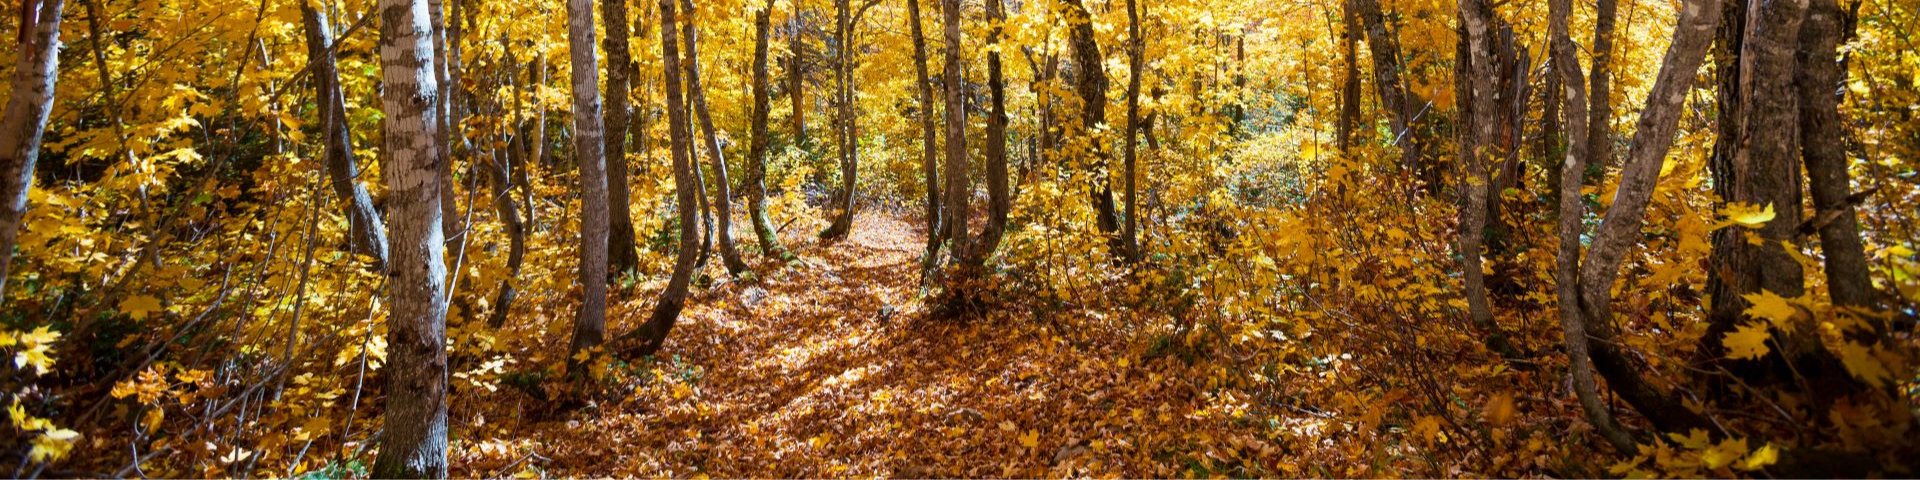 Sentier de feuilles mortes et arbres en automne. 